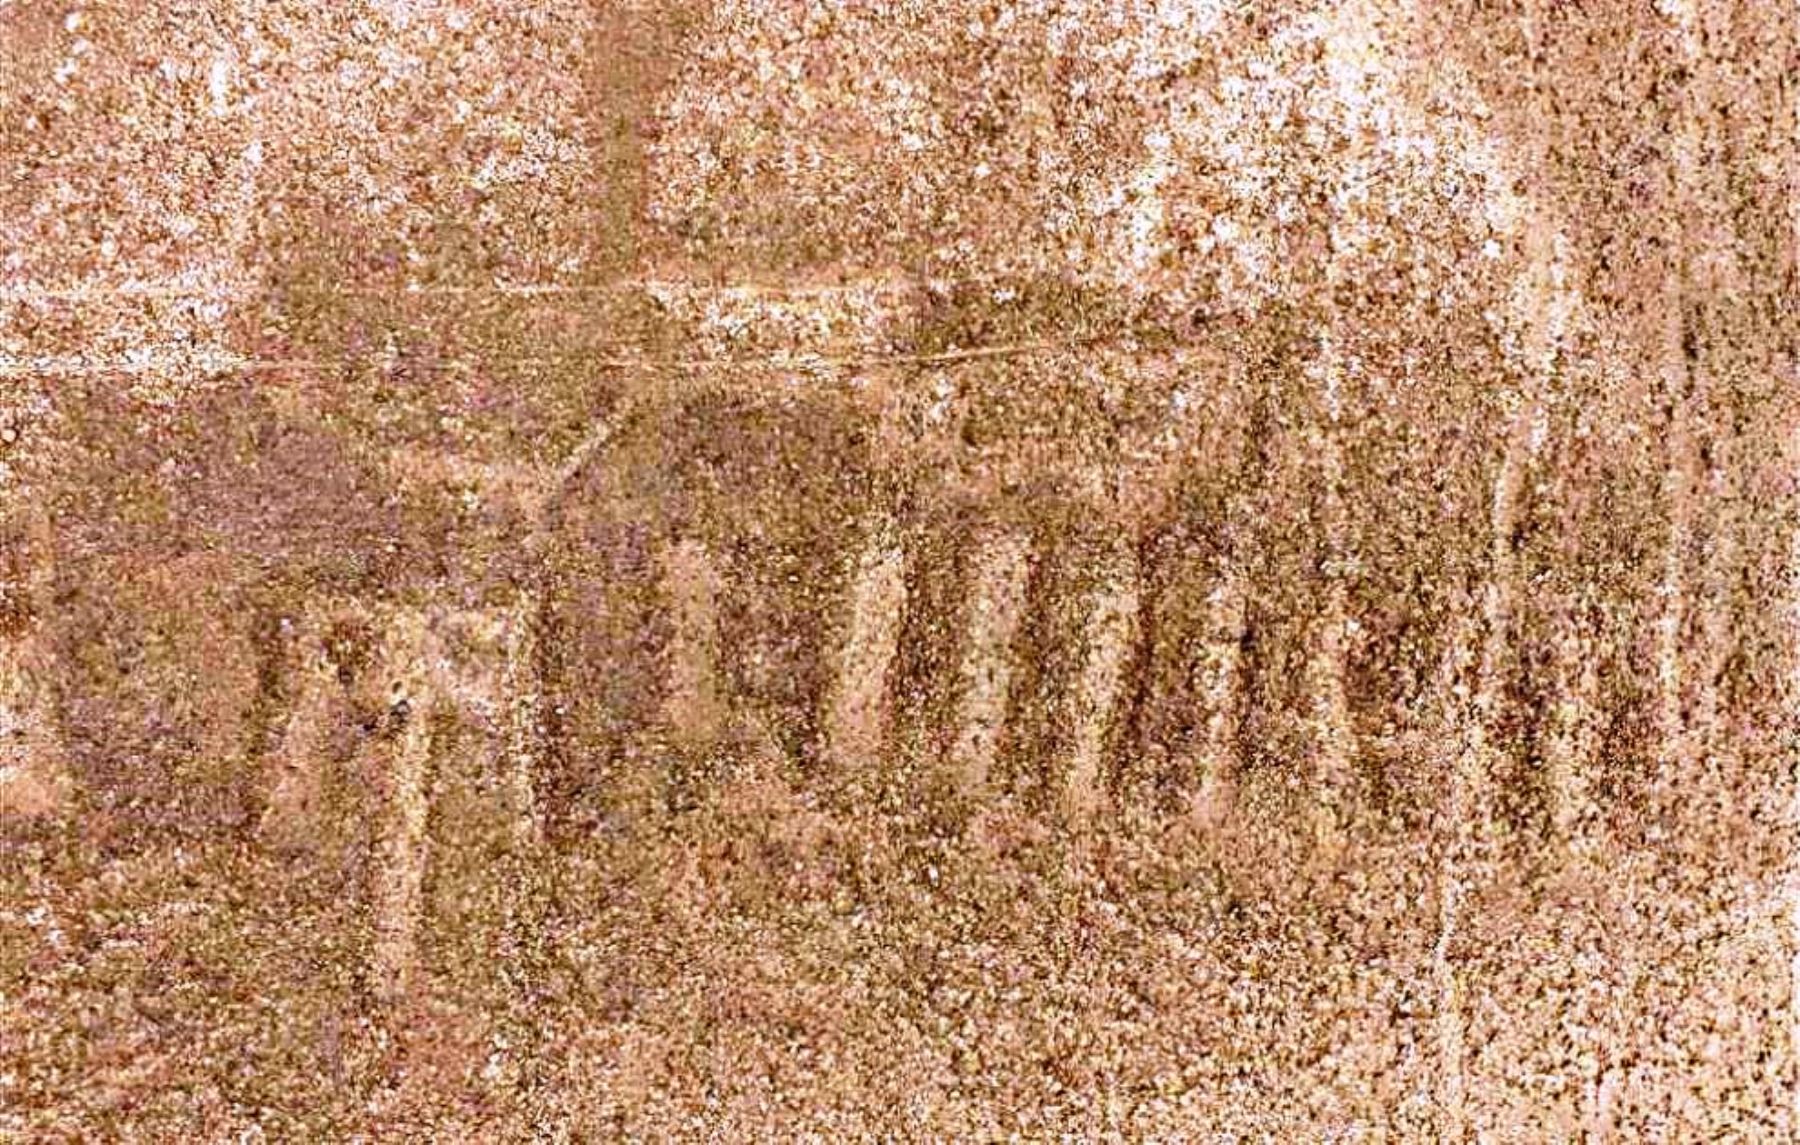 El reciente hallazgo de un nuevo geoglifo en el desierto de Nasca, en el sector de la pampa de Majuelos, ha vuelto a poner en relieve la importancia para la comunidad científica y el sector turístico de este sitio arqueológico, reconocido como patrimonio mundial por la Unesco.